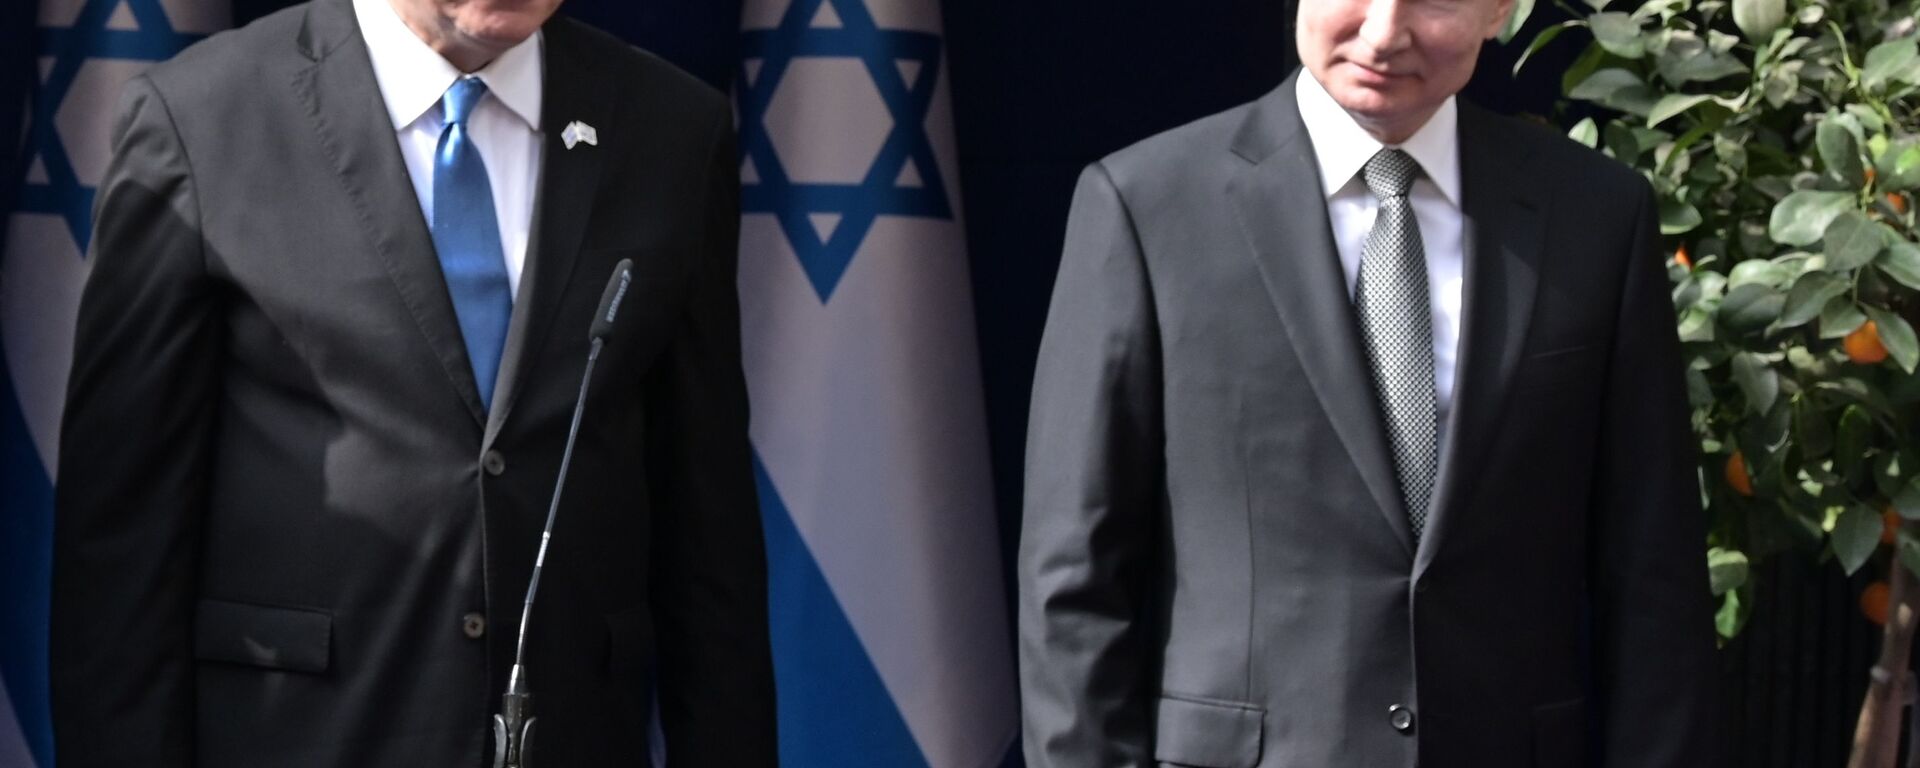 Председник Русије Владимир Путин и израелски премијер Бенјамин Нетанијаху - Sputnik Србија, 1920, 18.11.2020